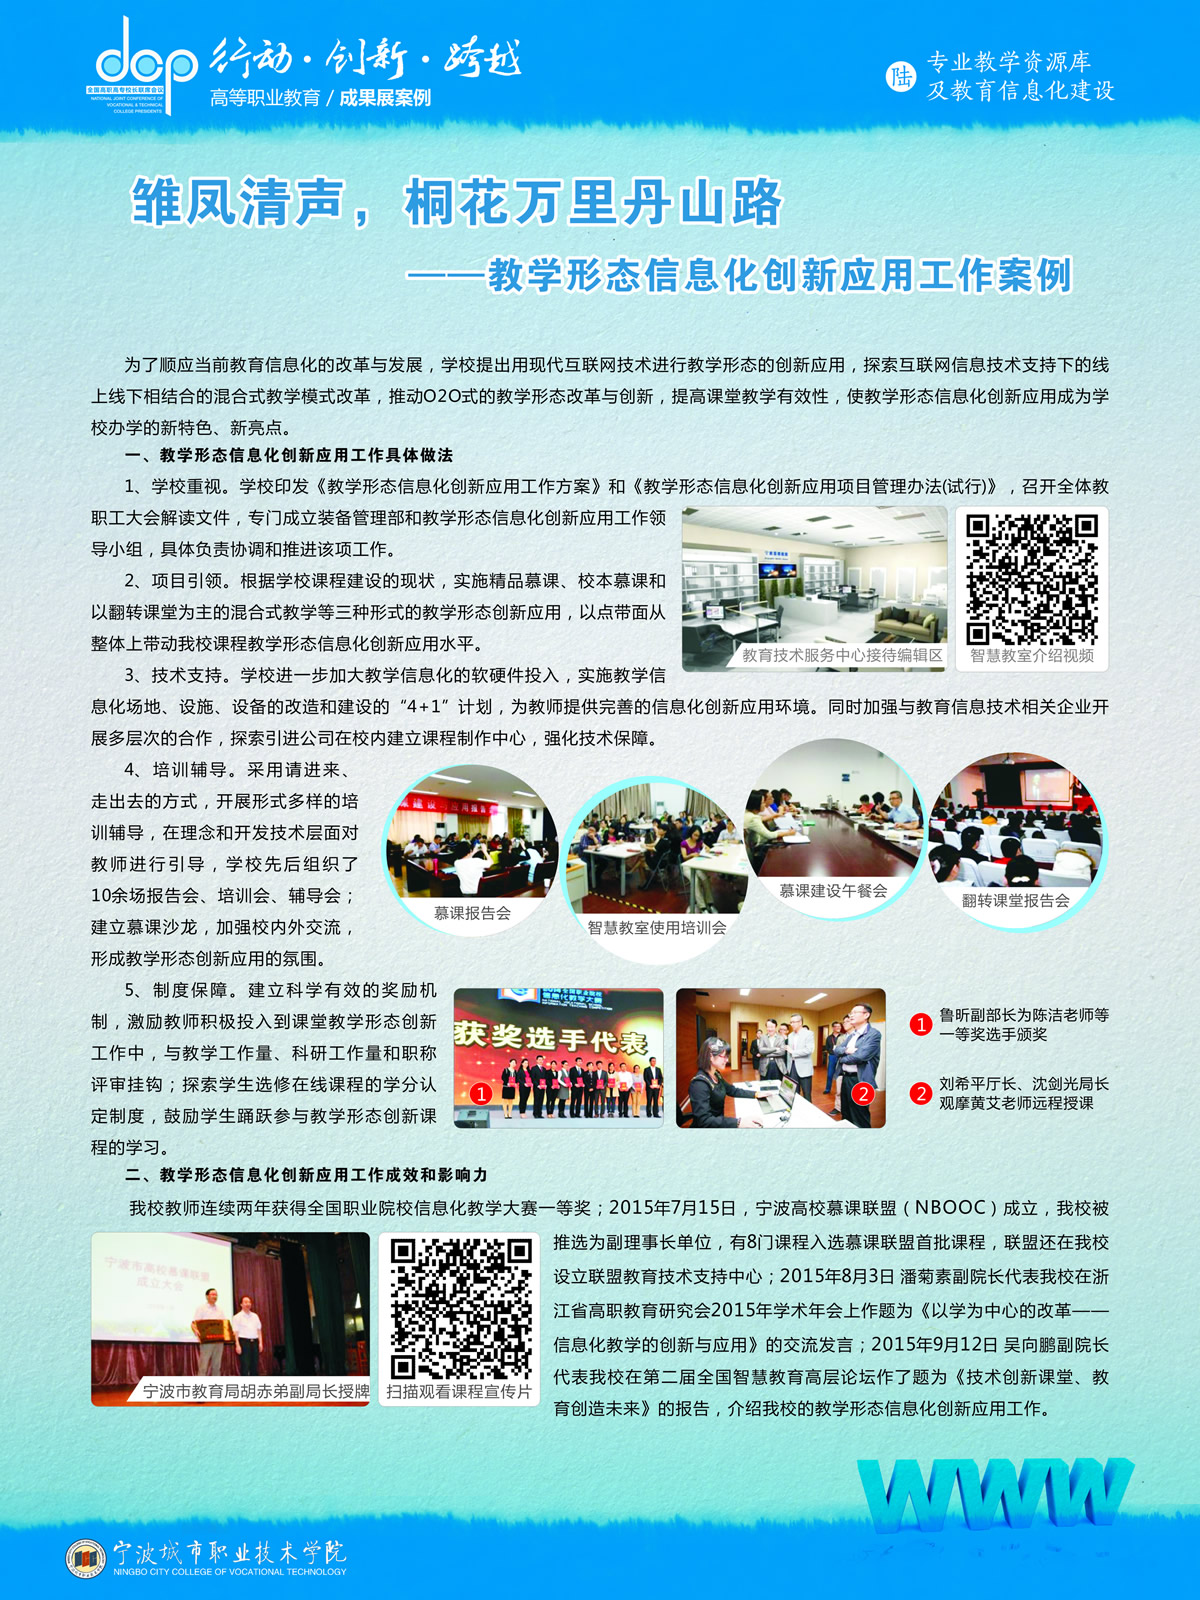 宁波城市职业技术学院宣传展板-教育信息化案例1.jpg